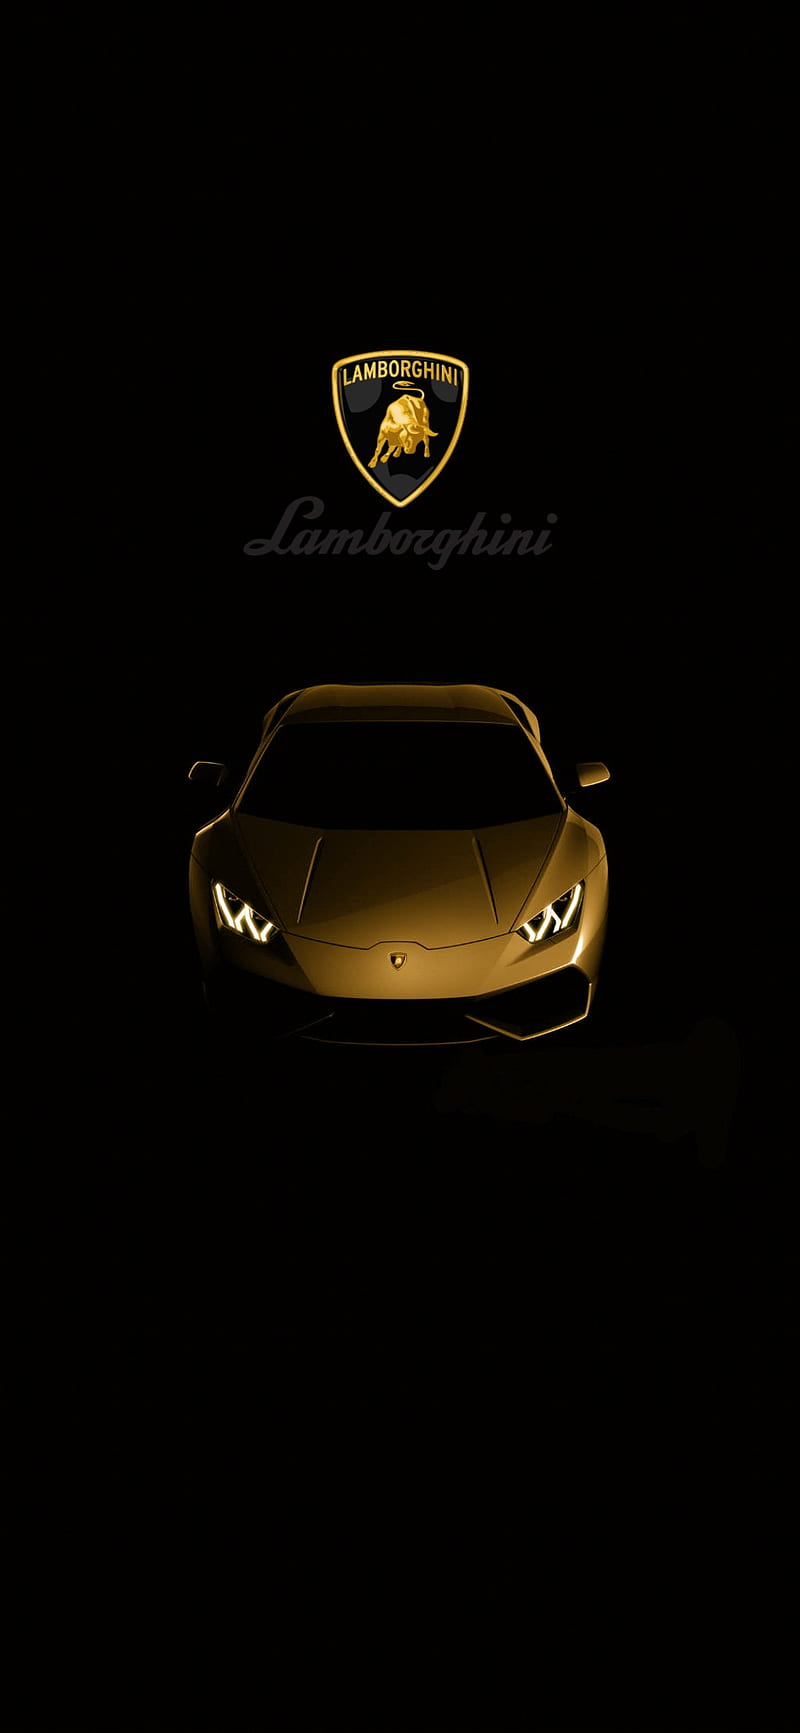 Lamborghini vàng HD - Xem hình siêu xe Lamborghini vàng HD để chiêm ngưỡng vẻ đẹp đầy mê hoặc. Động cơ mạnh mẽ, thiết kế sang trọng và lớp sơn vàng huyền bí sẽ khiến bạn thôi miên từ cái nhìn đầu tiên.